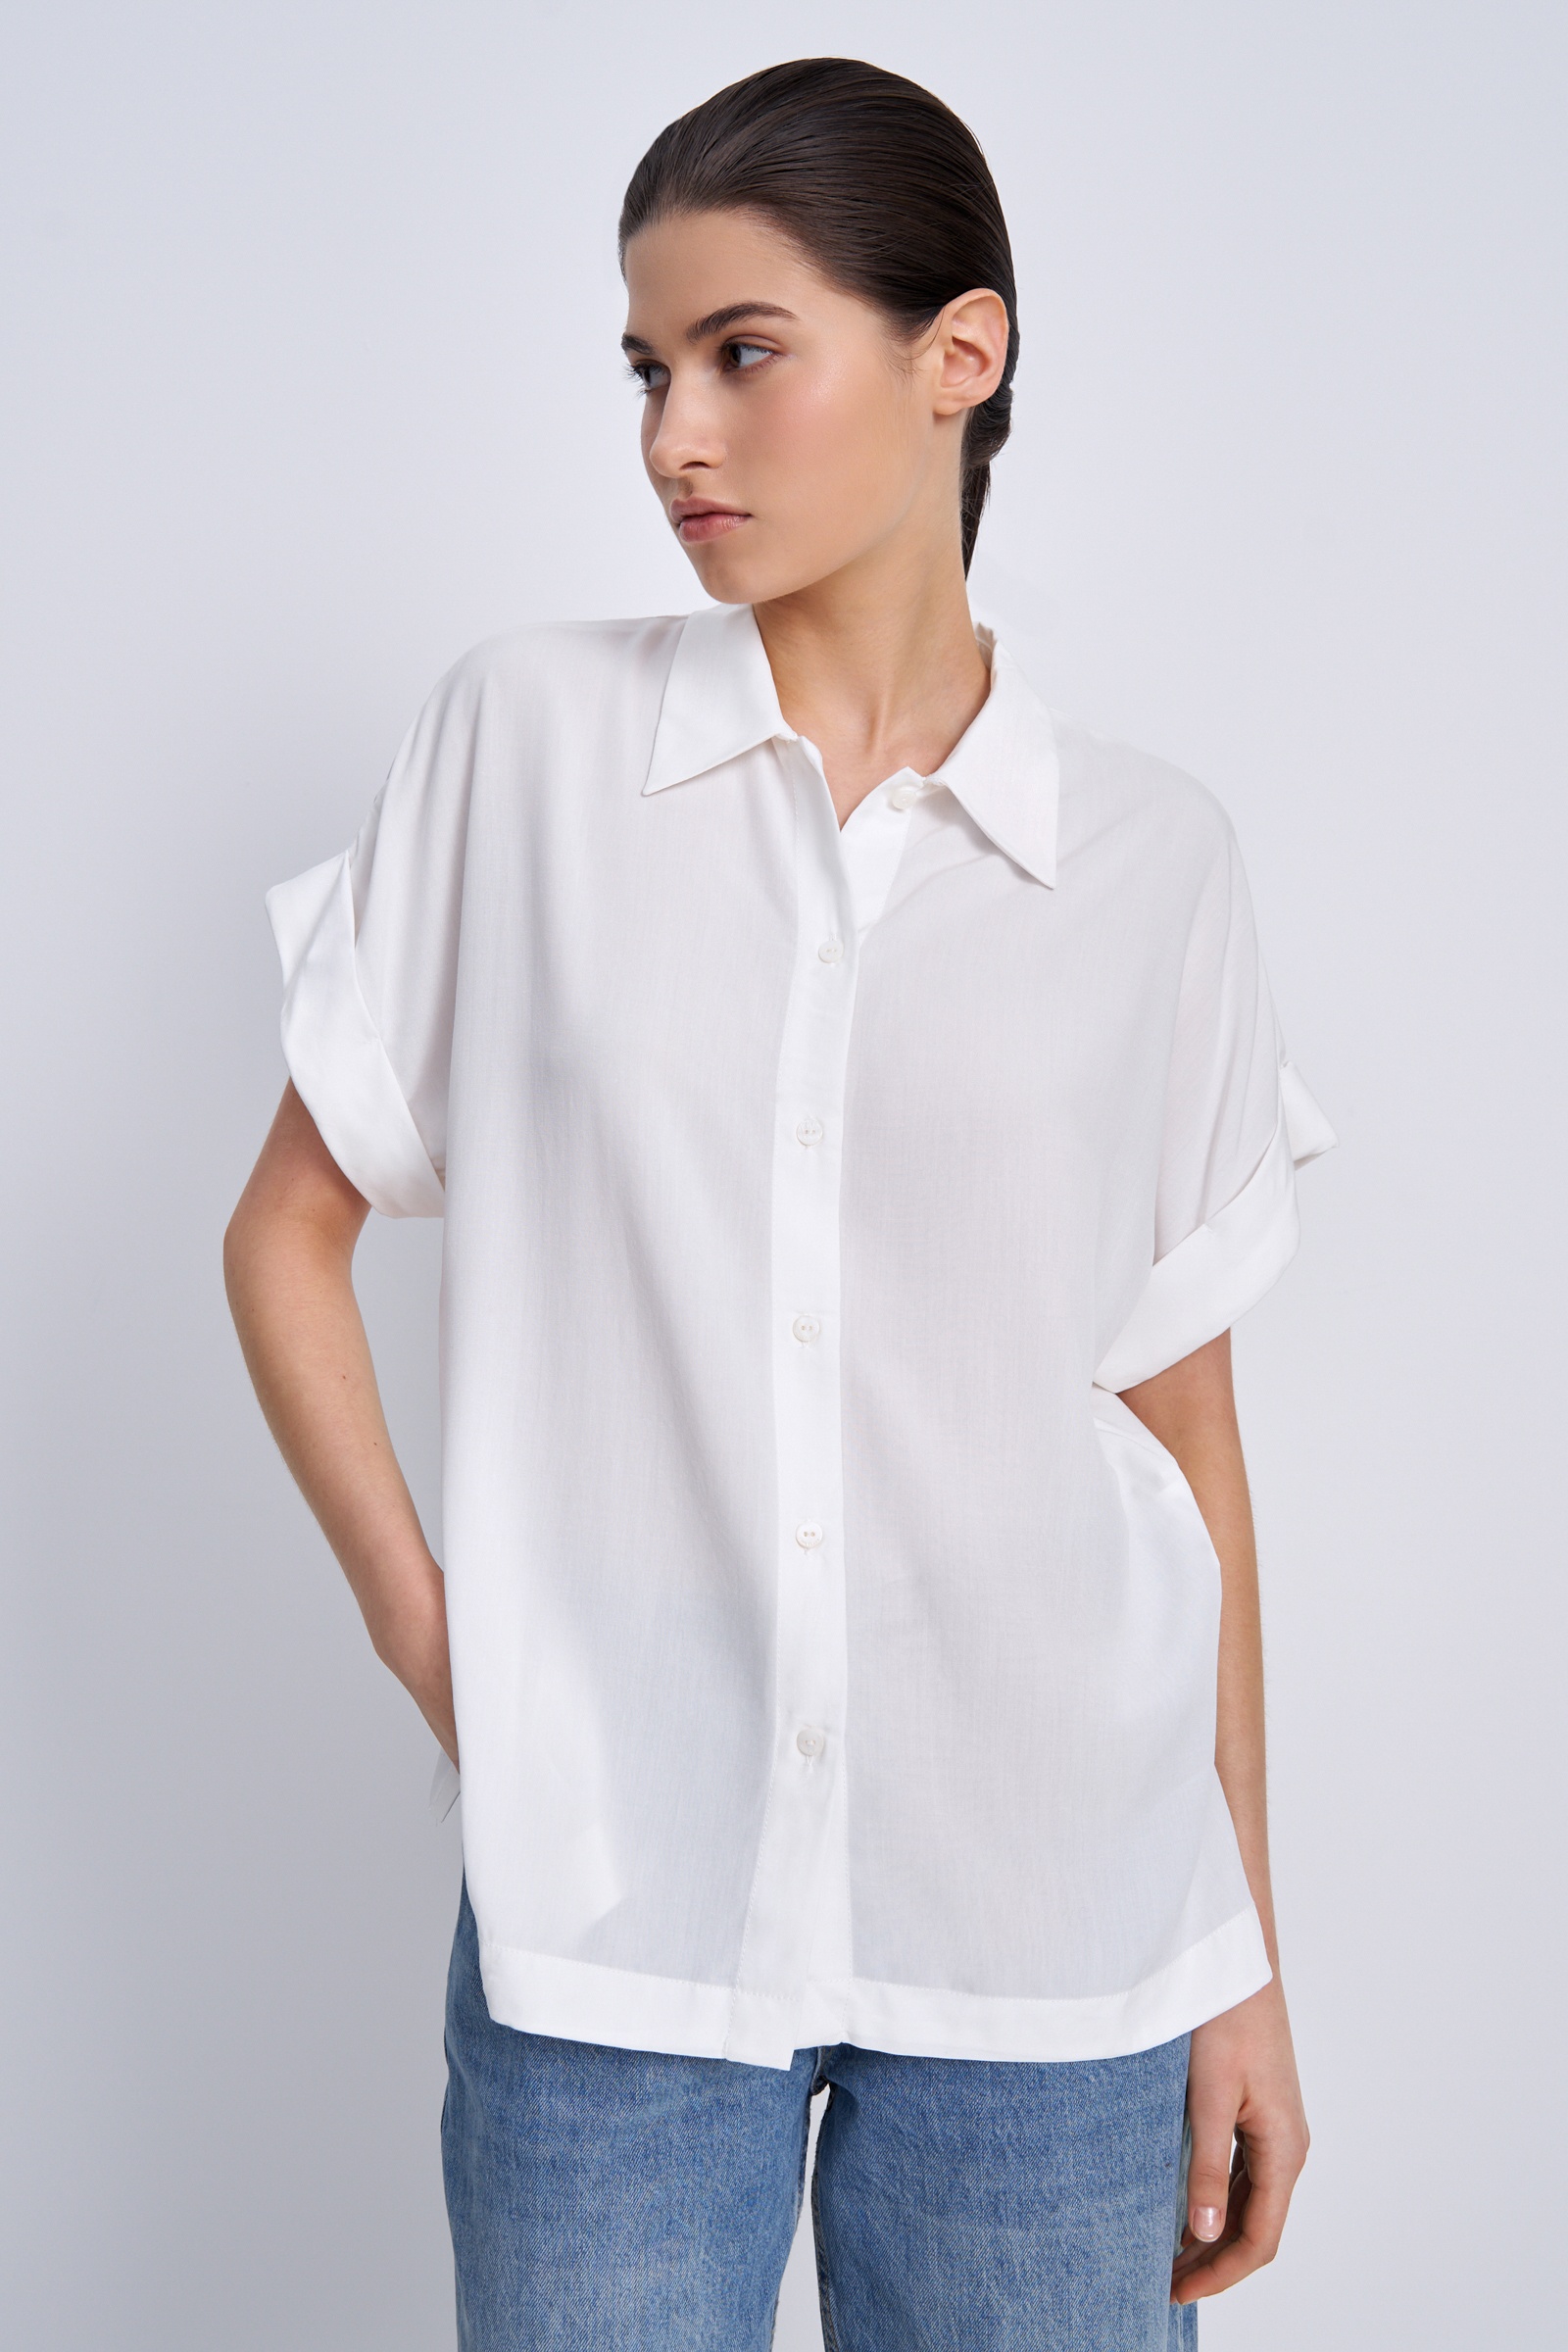 Рубашка женская Finn Flare BAS-10041 белая S